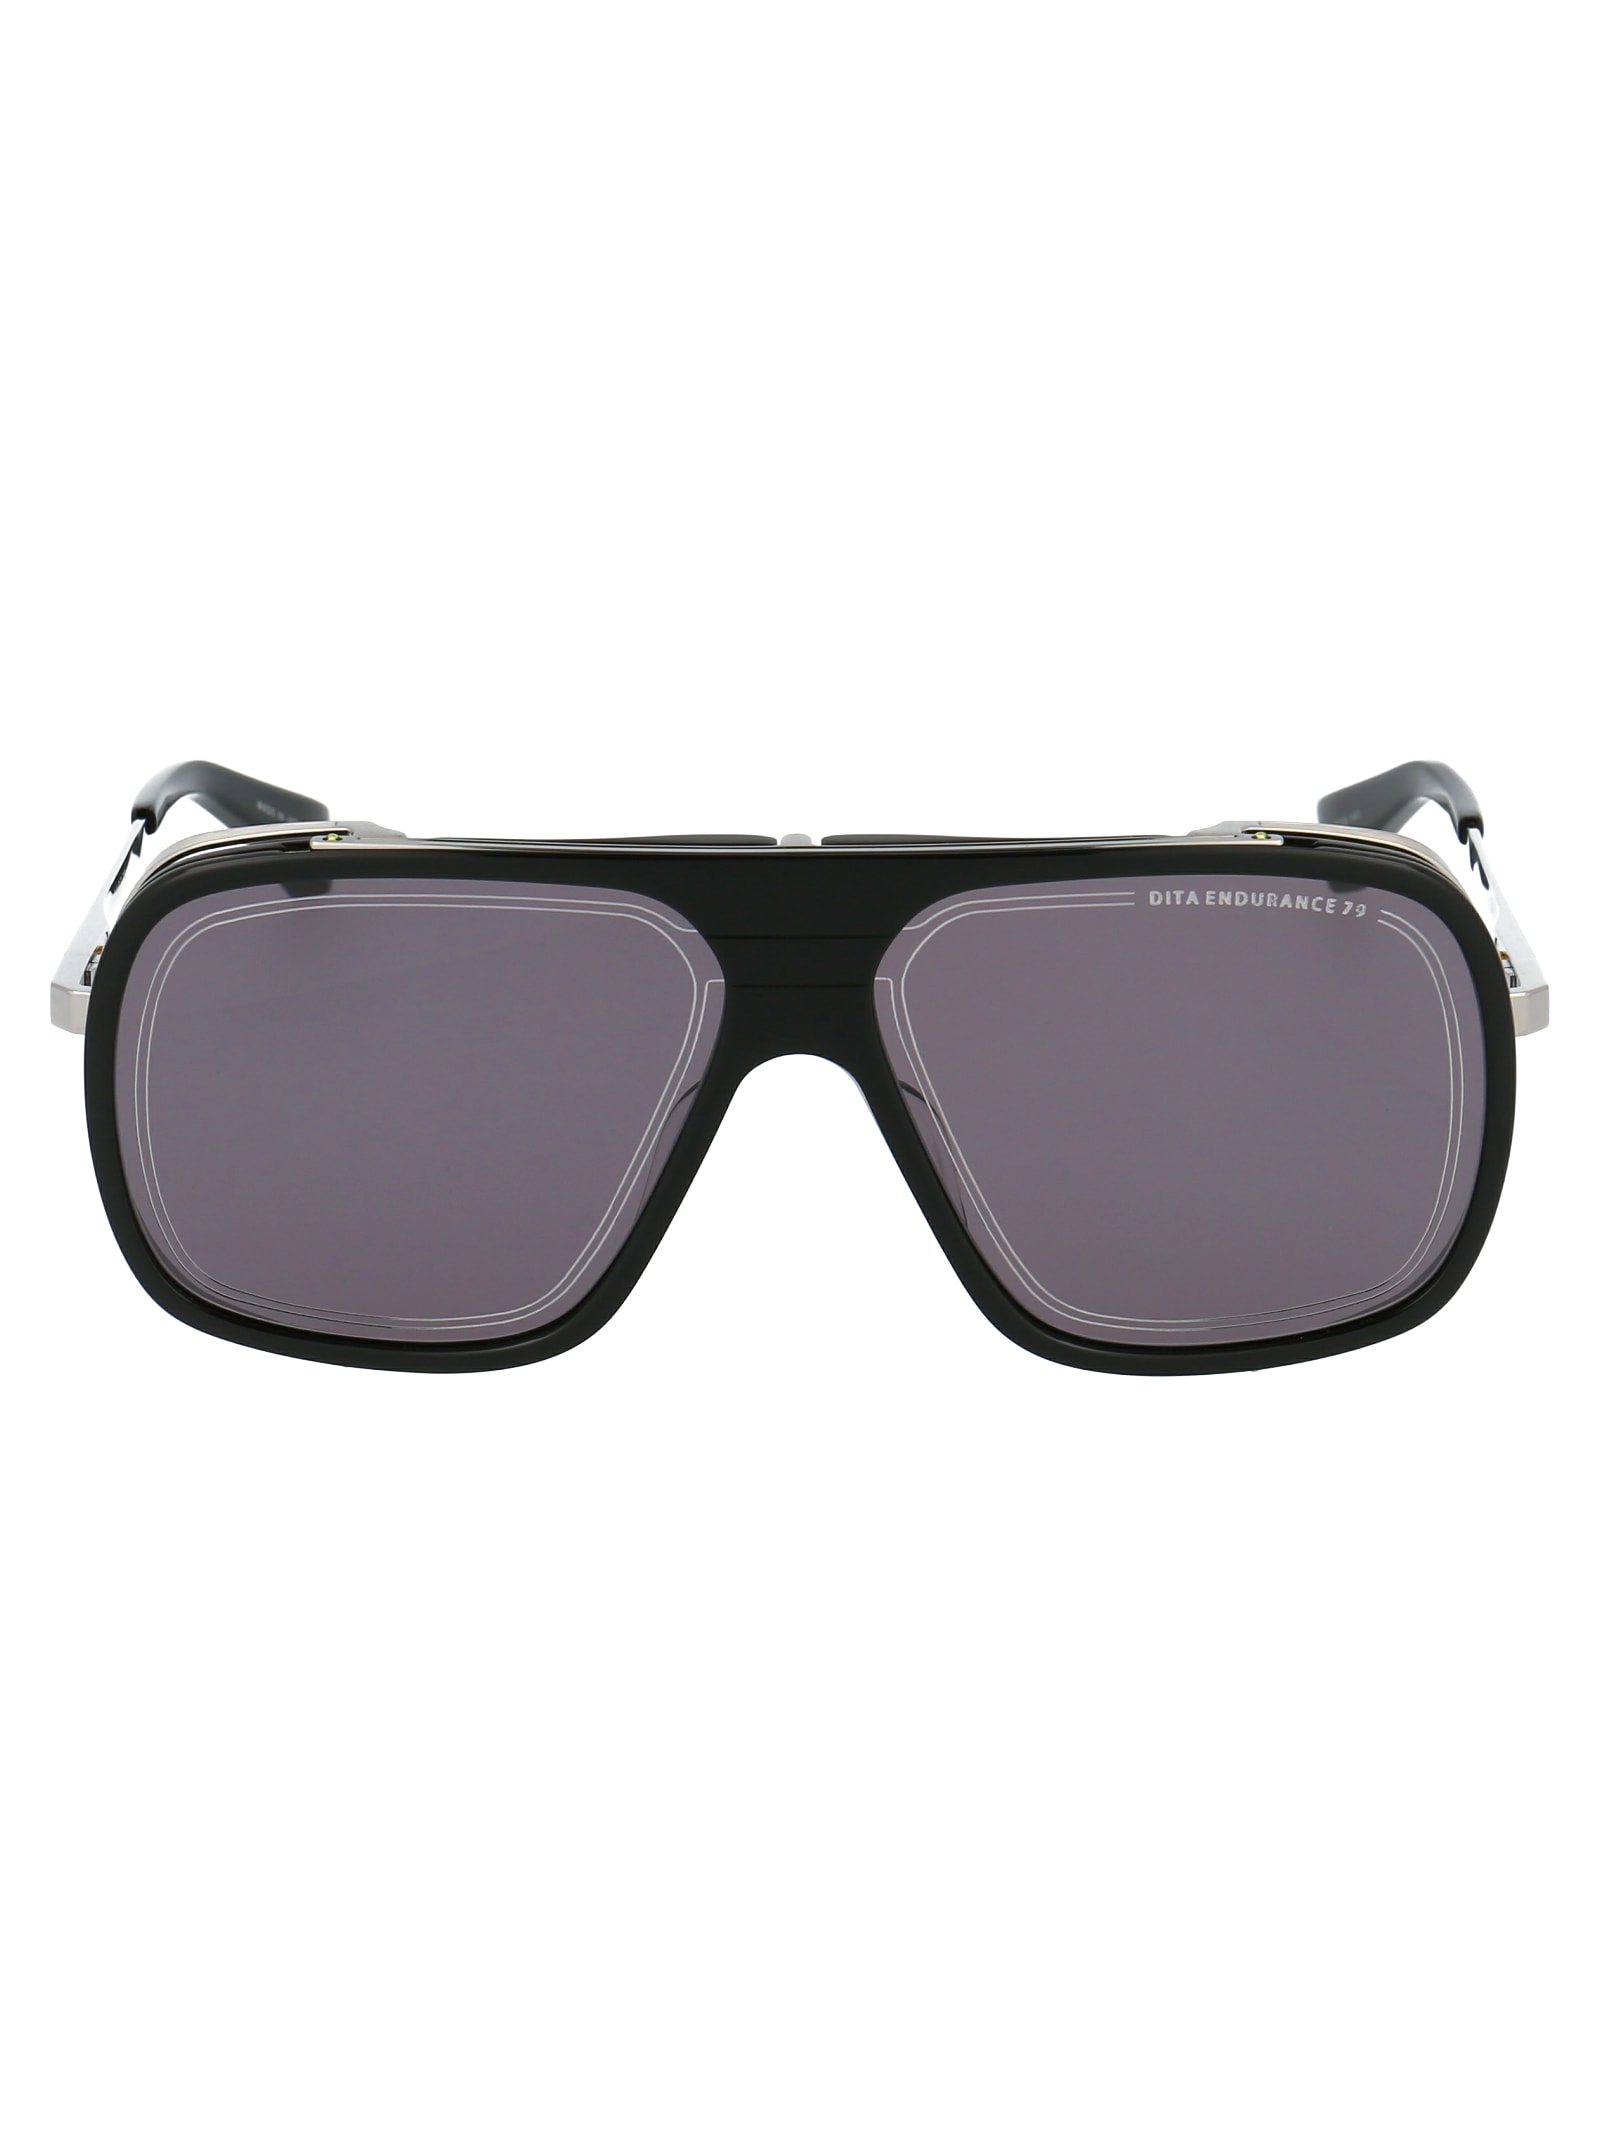 Dita Sunglasses In Black/black Palladium